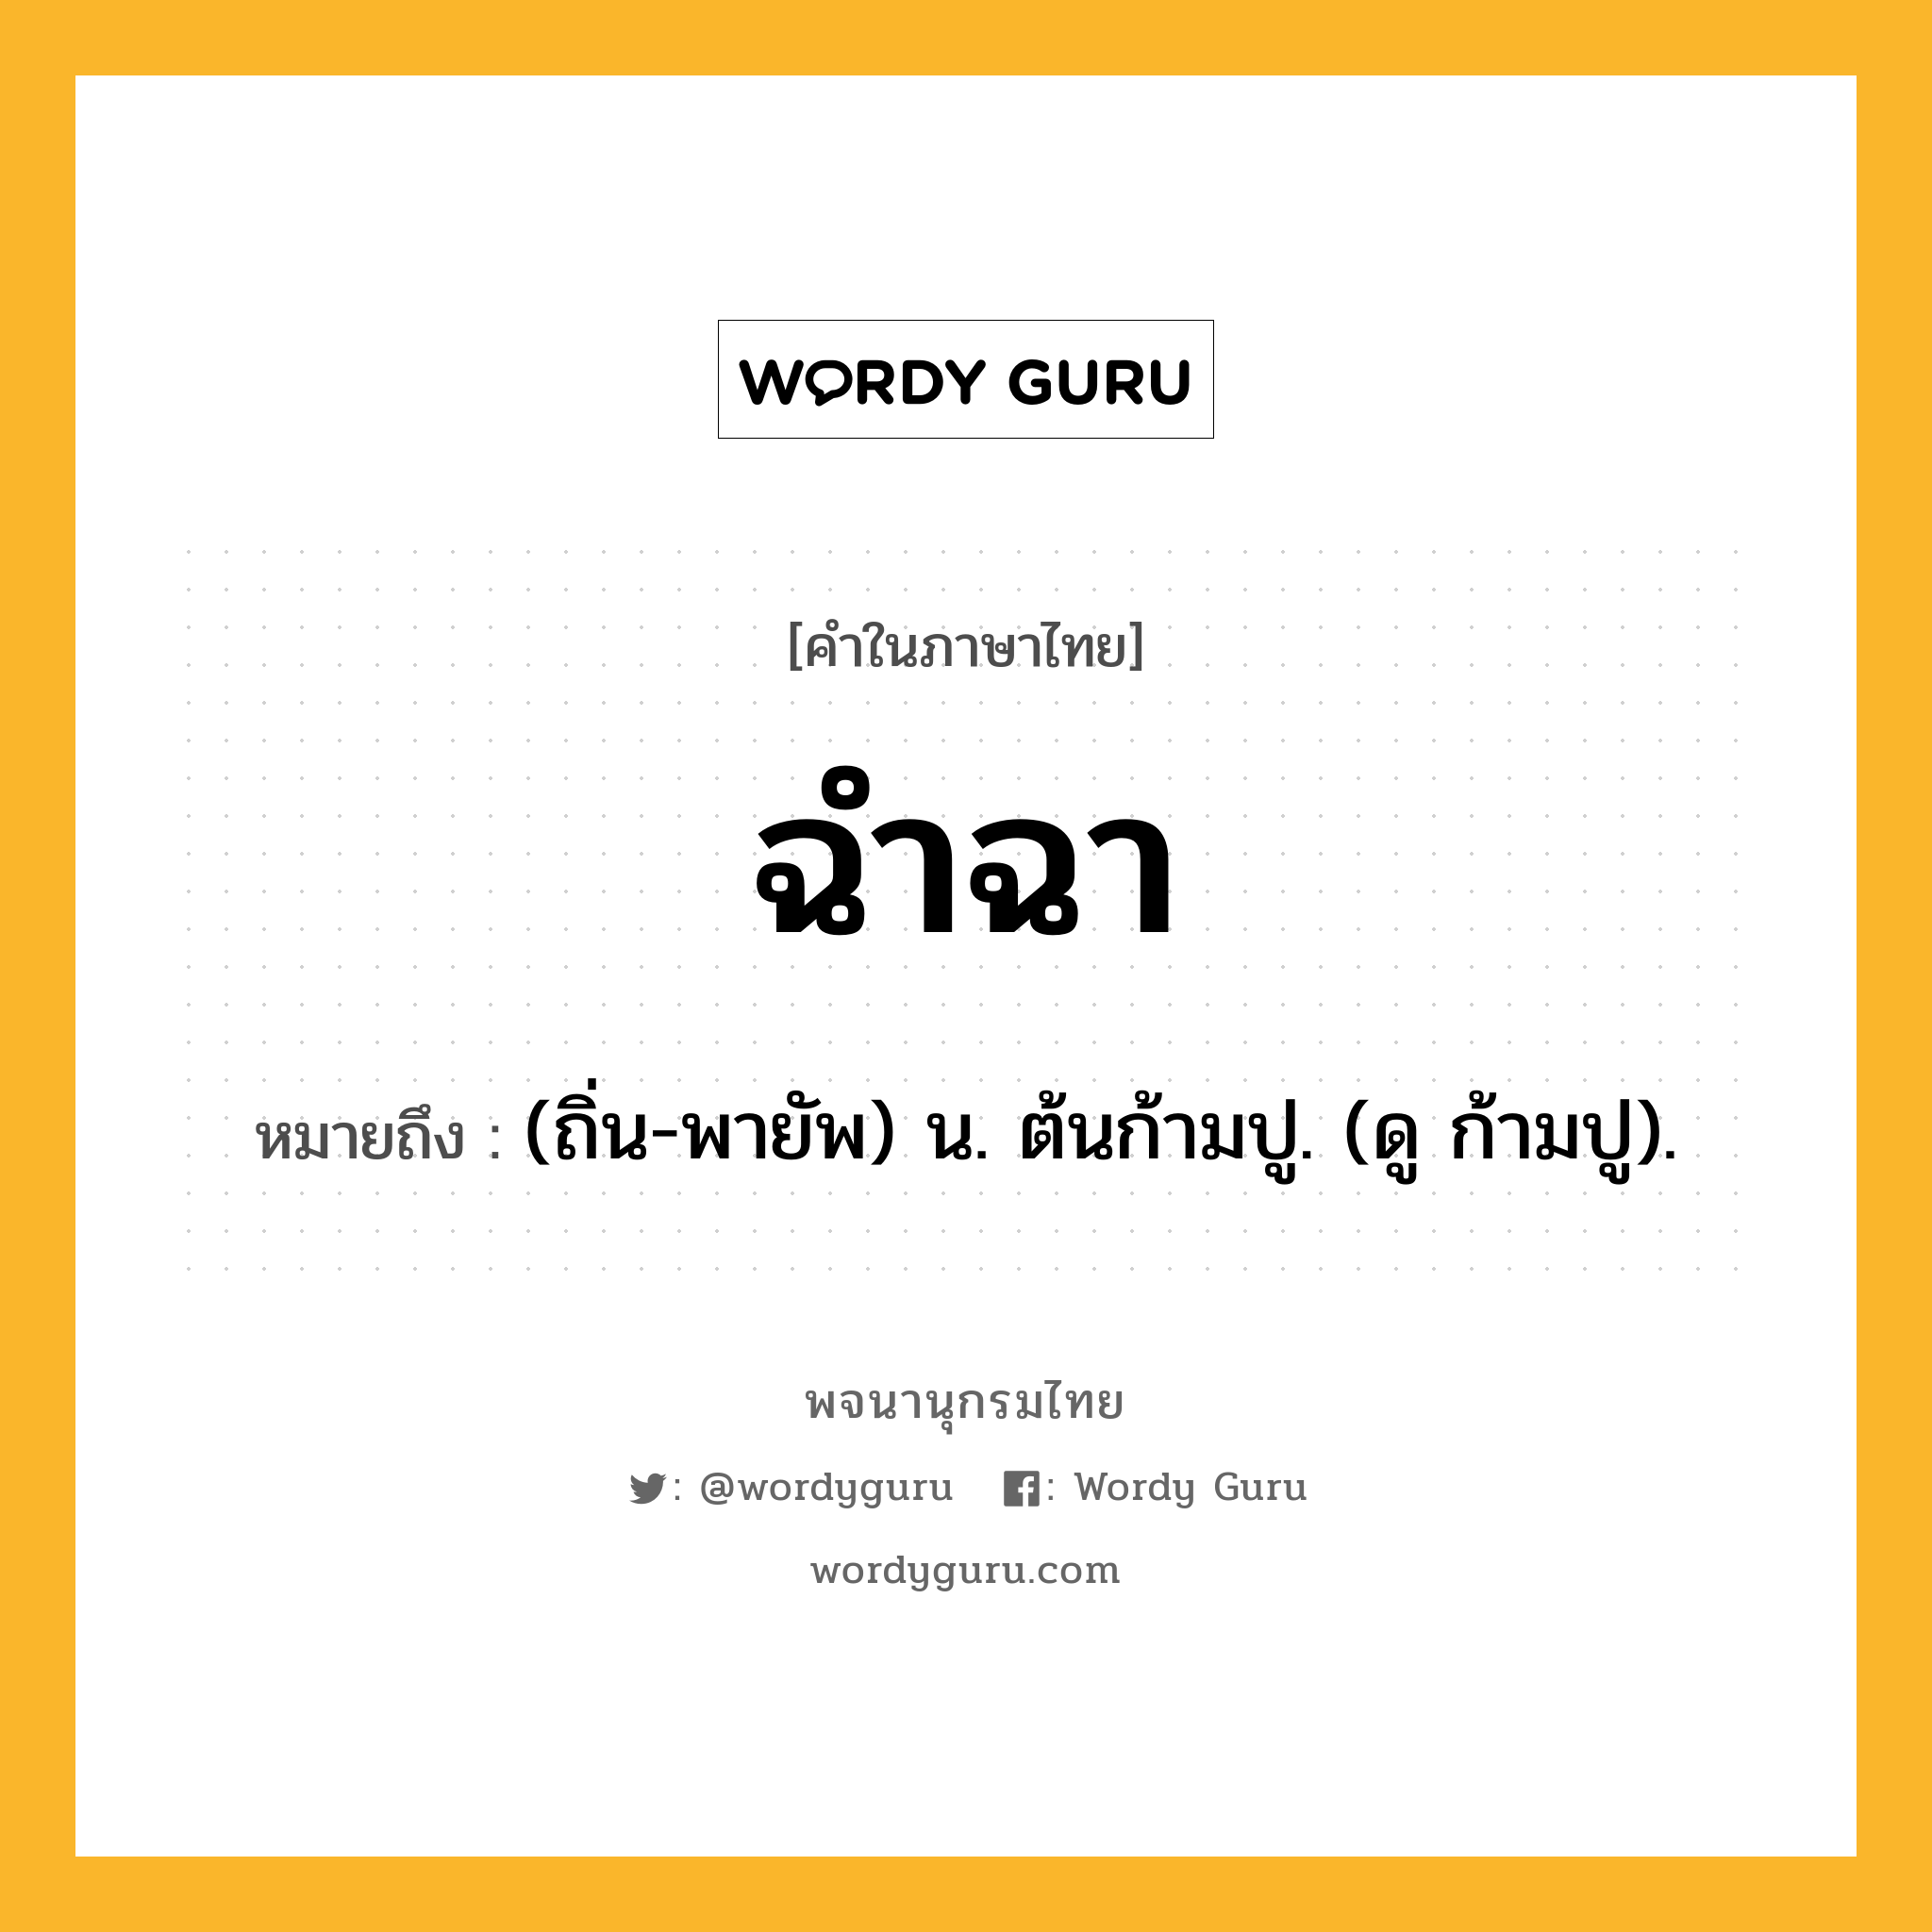 ฉำฉา หมายถึงอะไร?, คำในภาษาไทย ฉำฉา หมายถึง (ถิ่น-พายัพ) น. ต้นก้ามปู. (ดู ก้ามปู).